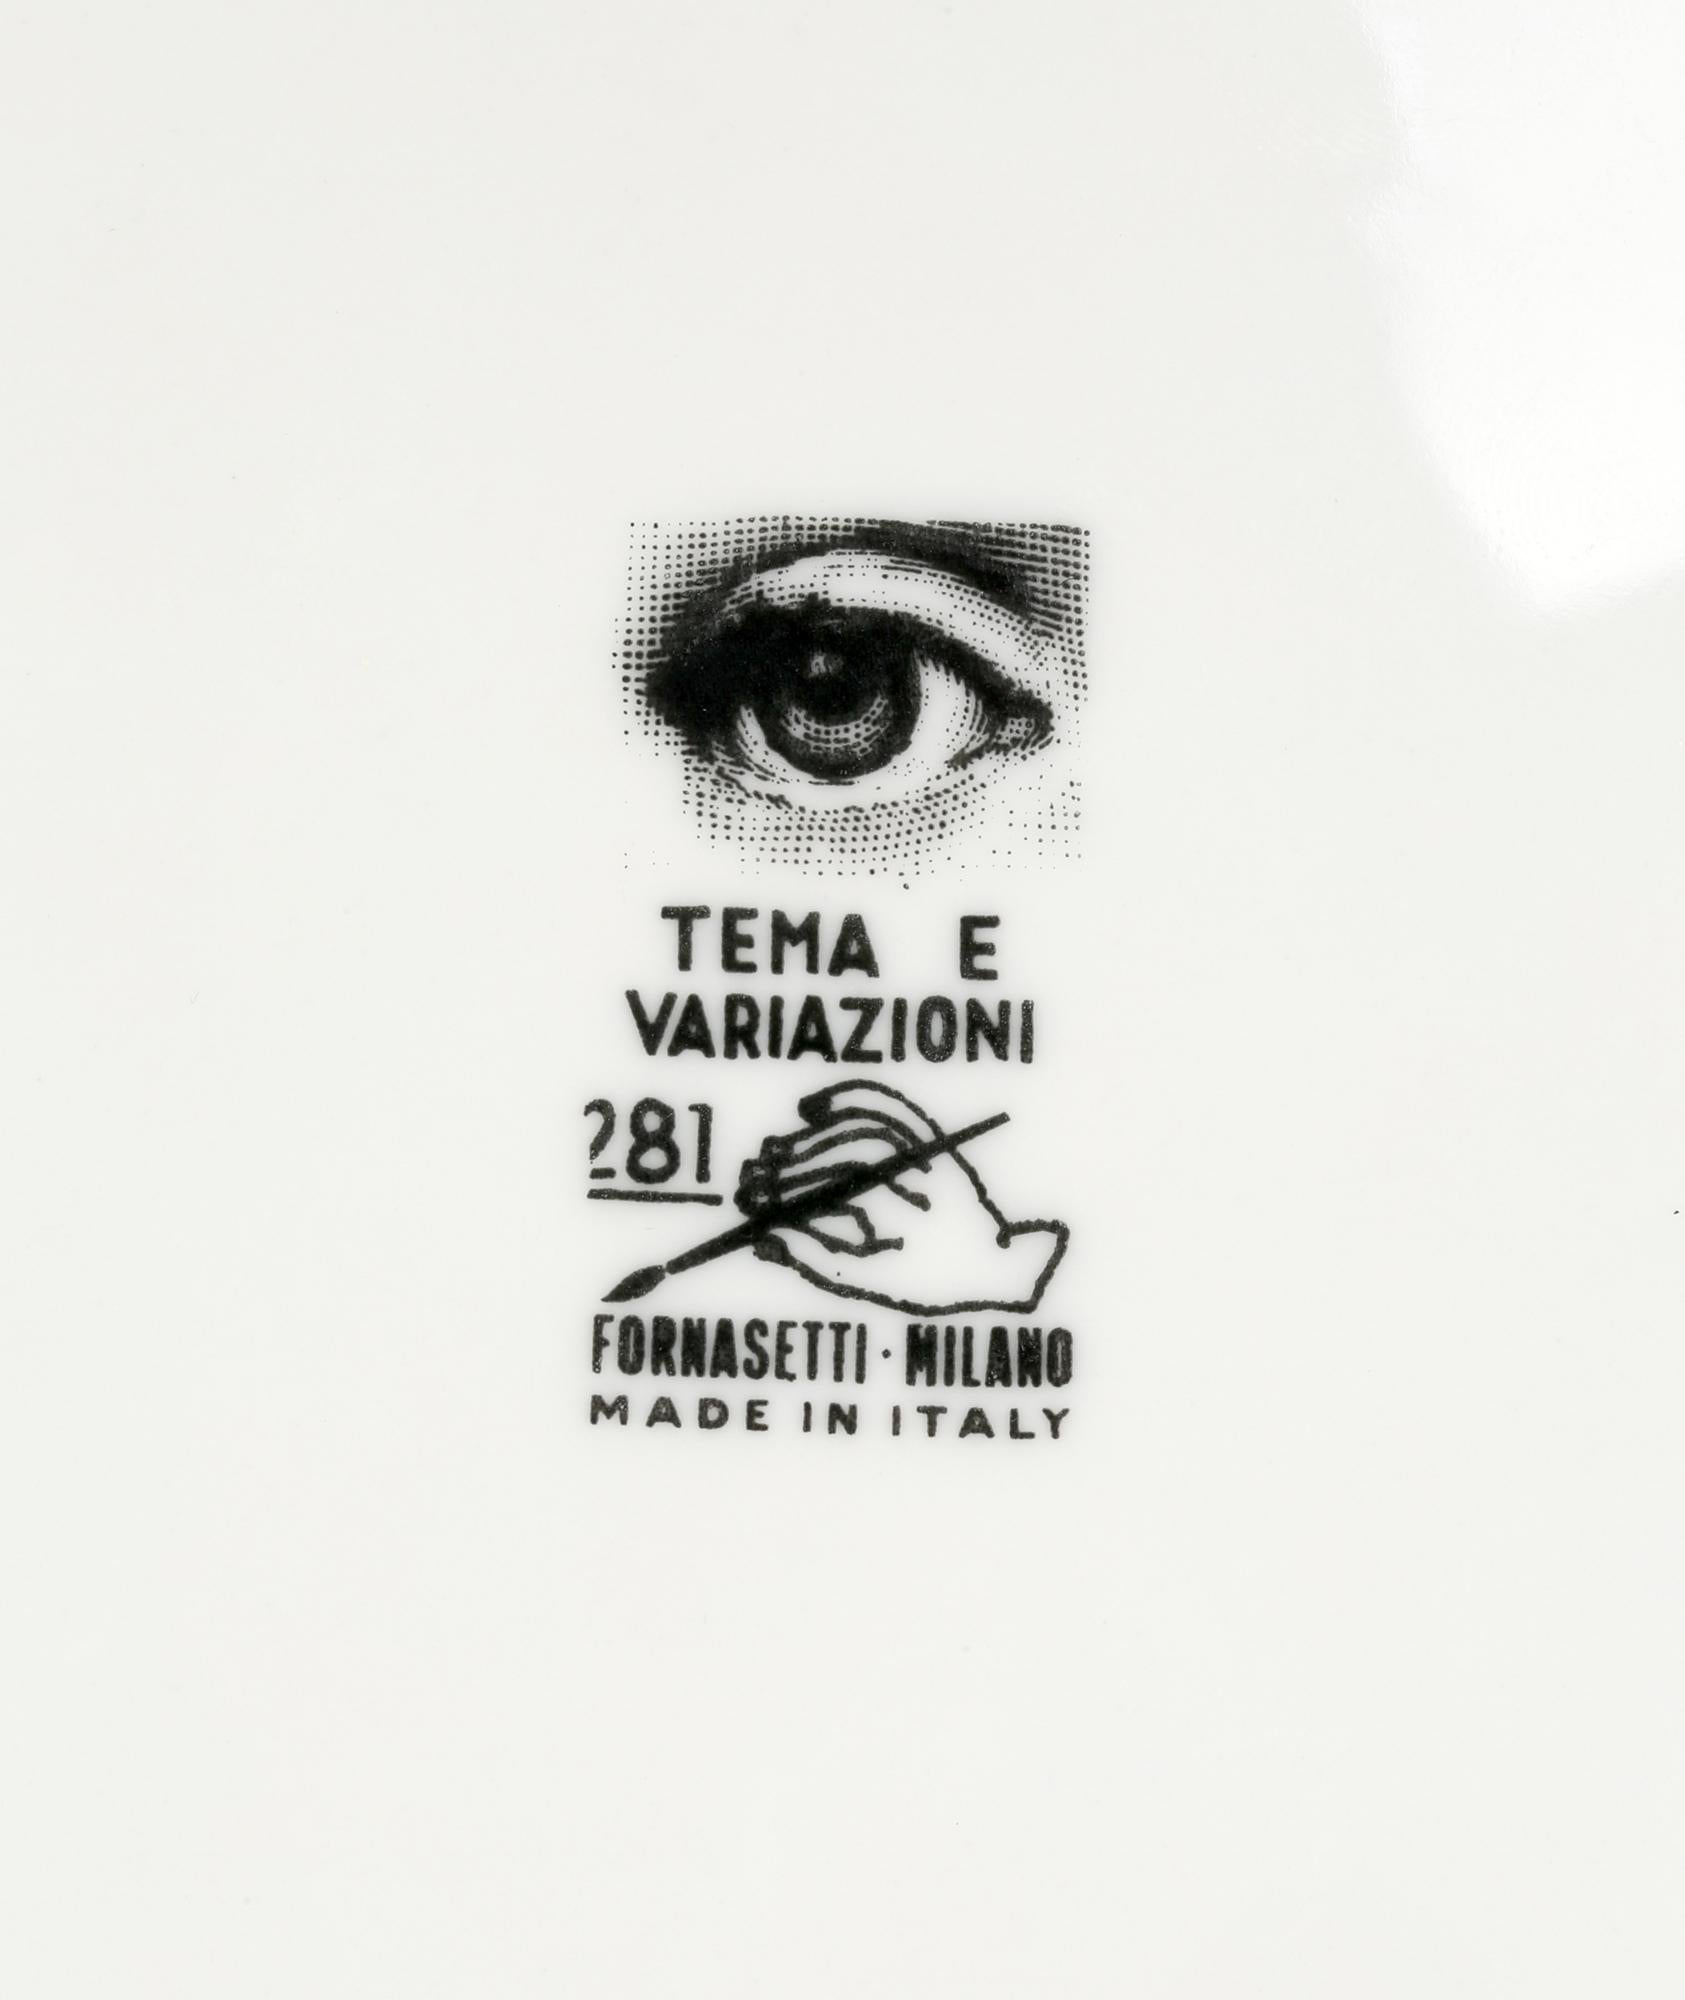 Assiette en porcelaine italienne vintage de Piero Fornasetti (italien 1913-1988) décorée du visage de sa muse, Lina Cavalieri, imprimé sur un torse nu et datant des années 1960. La plaque a des marques imprimées à la base et est le numéro 281 de sa